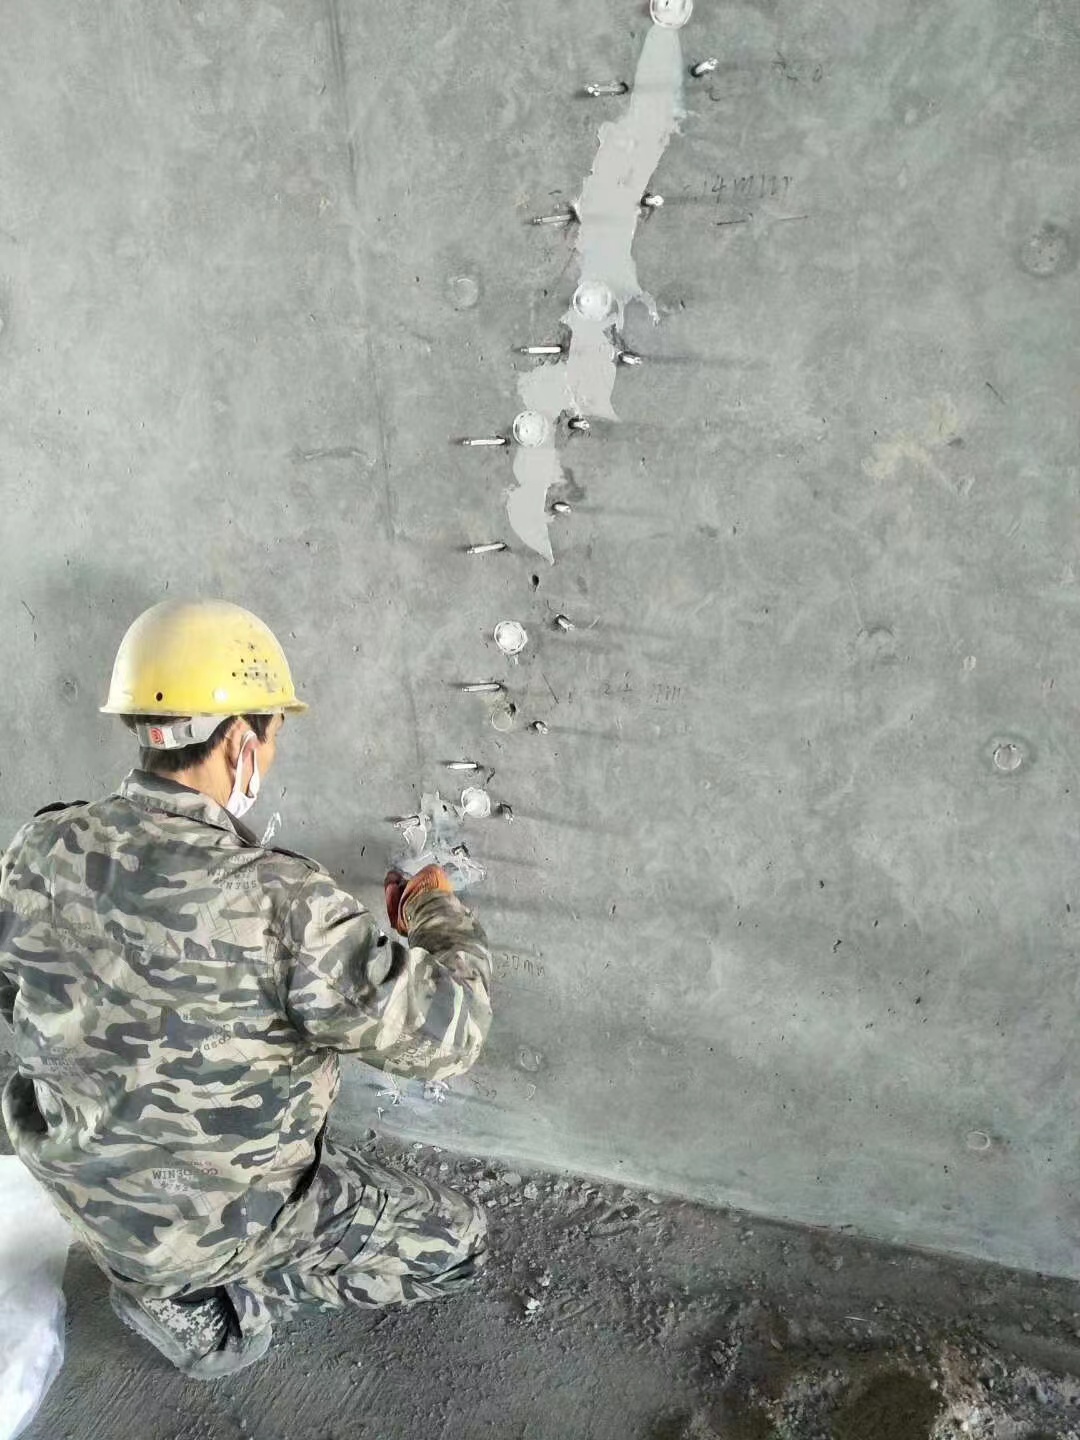 新疆混凝土楼板裂缝加固施工的方案